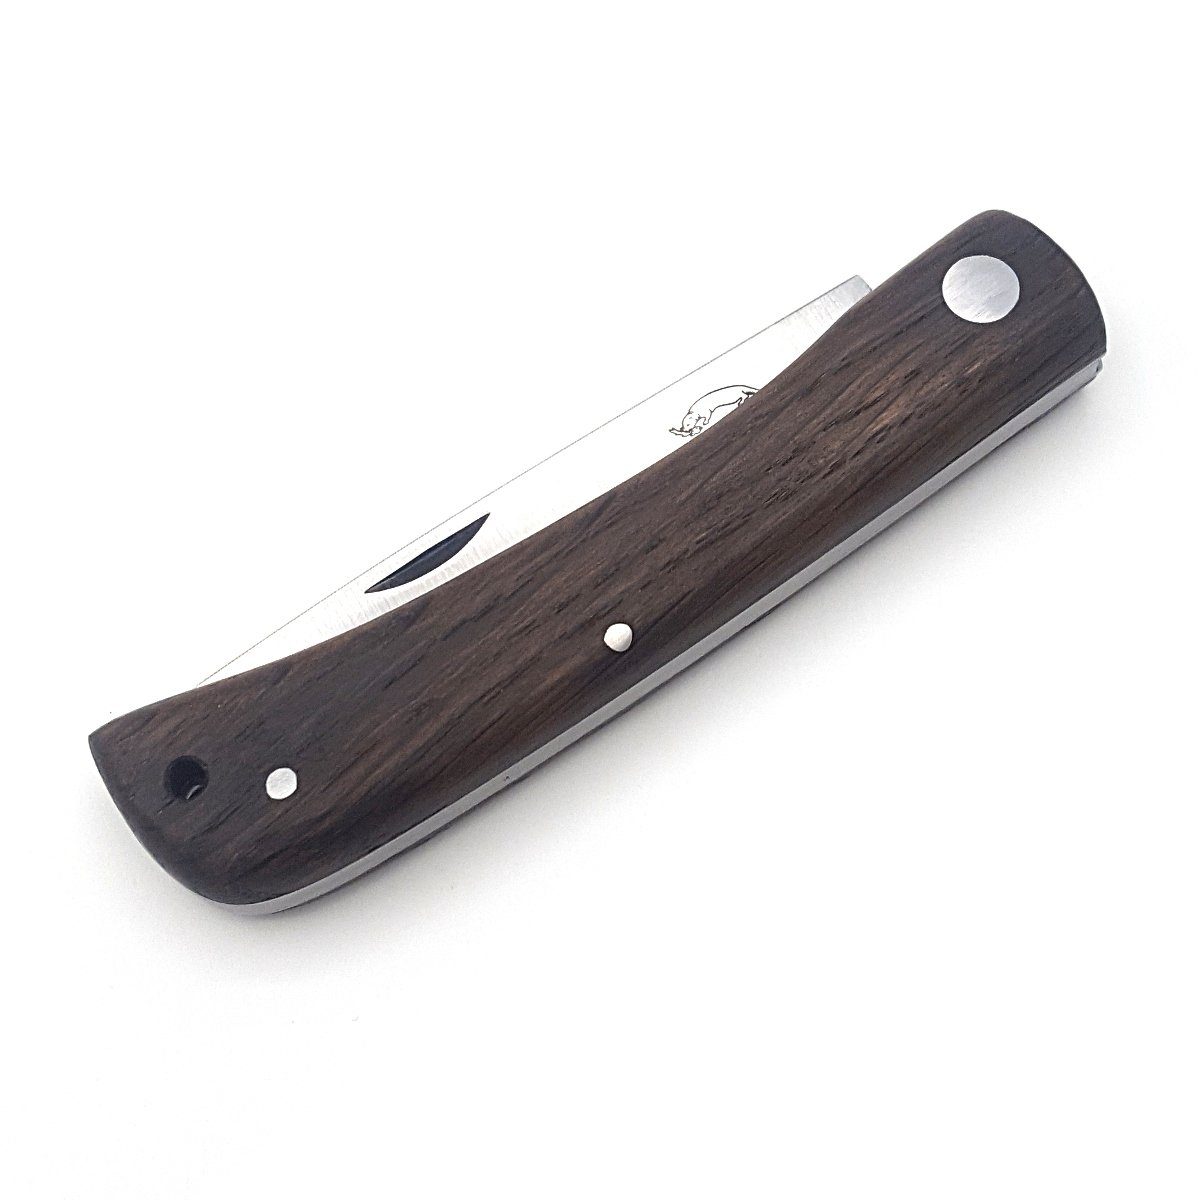 Otter Messer Taschenmesser Hippekniep Slipjoint Lederband, groß mit Carbonstahl, Klinge Räuchereiche